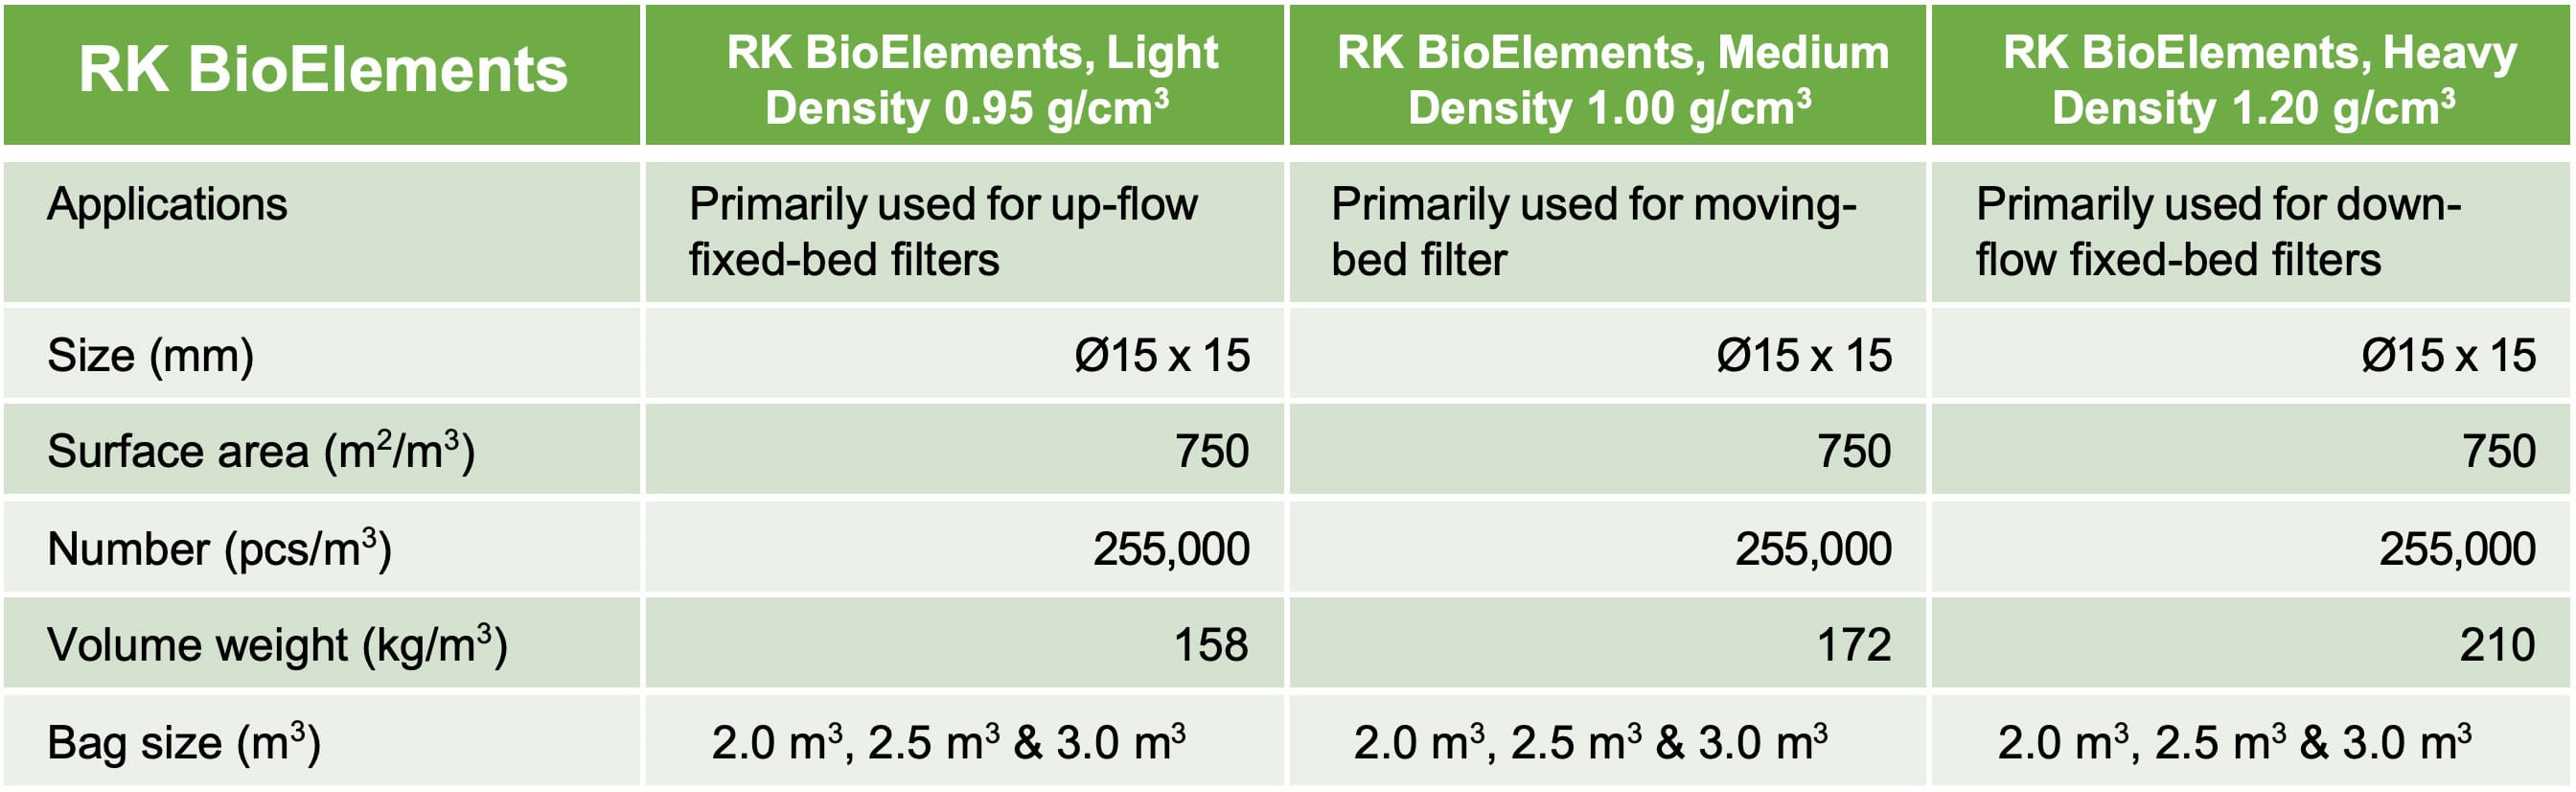 RK BioElements